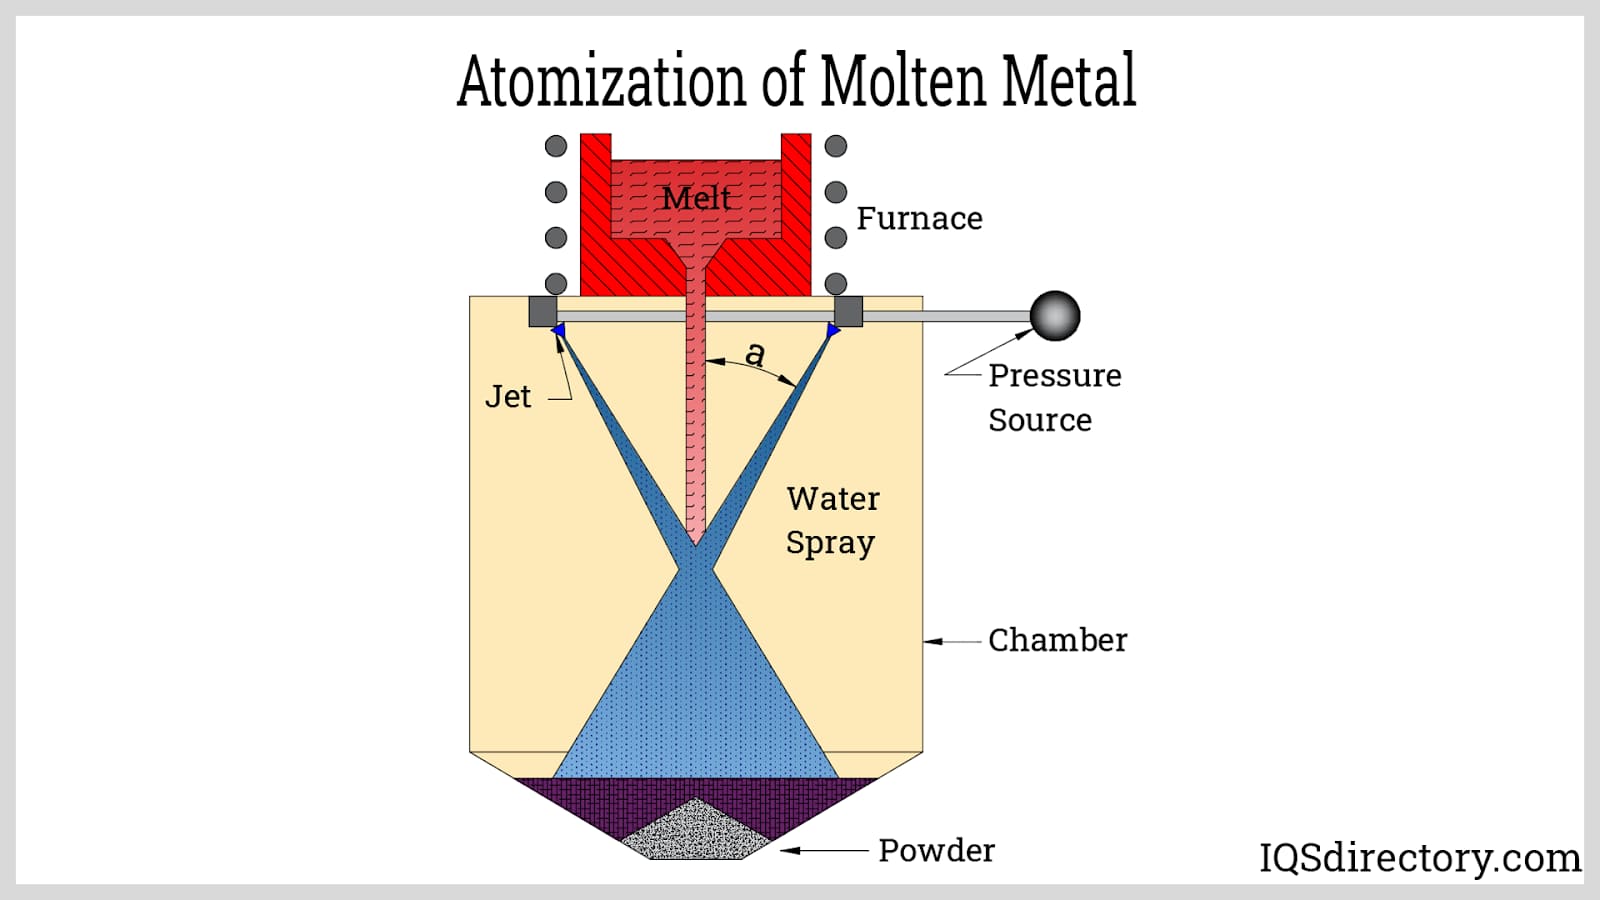 Producing Powder Through Atomization